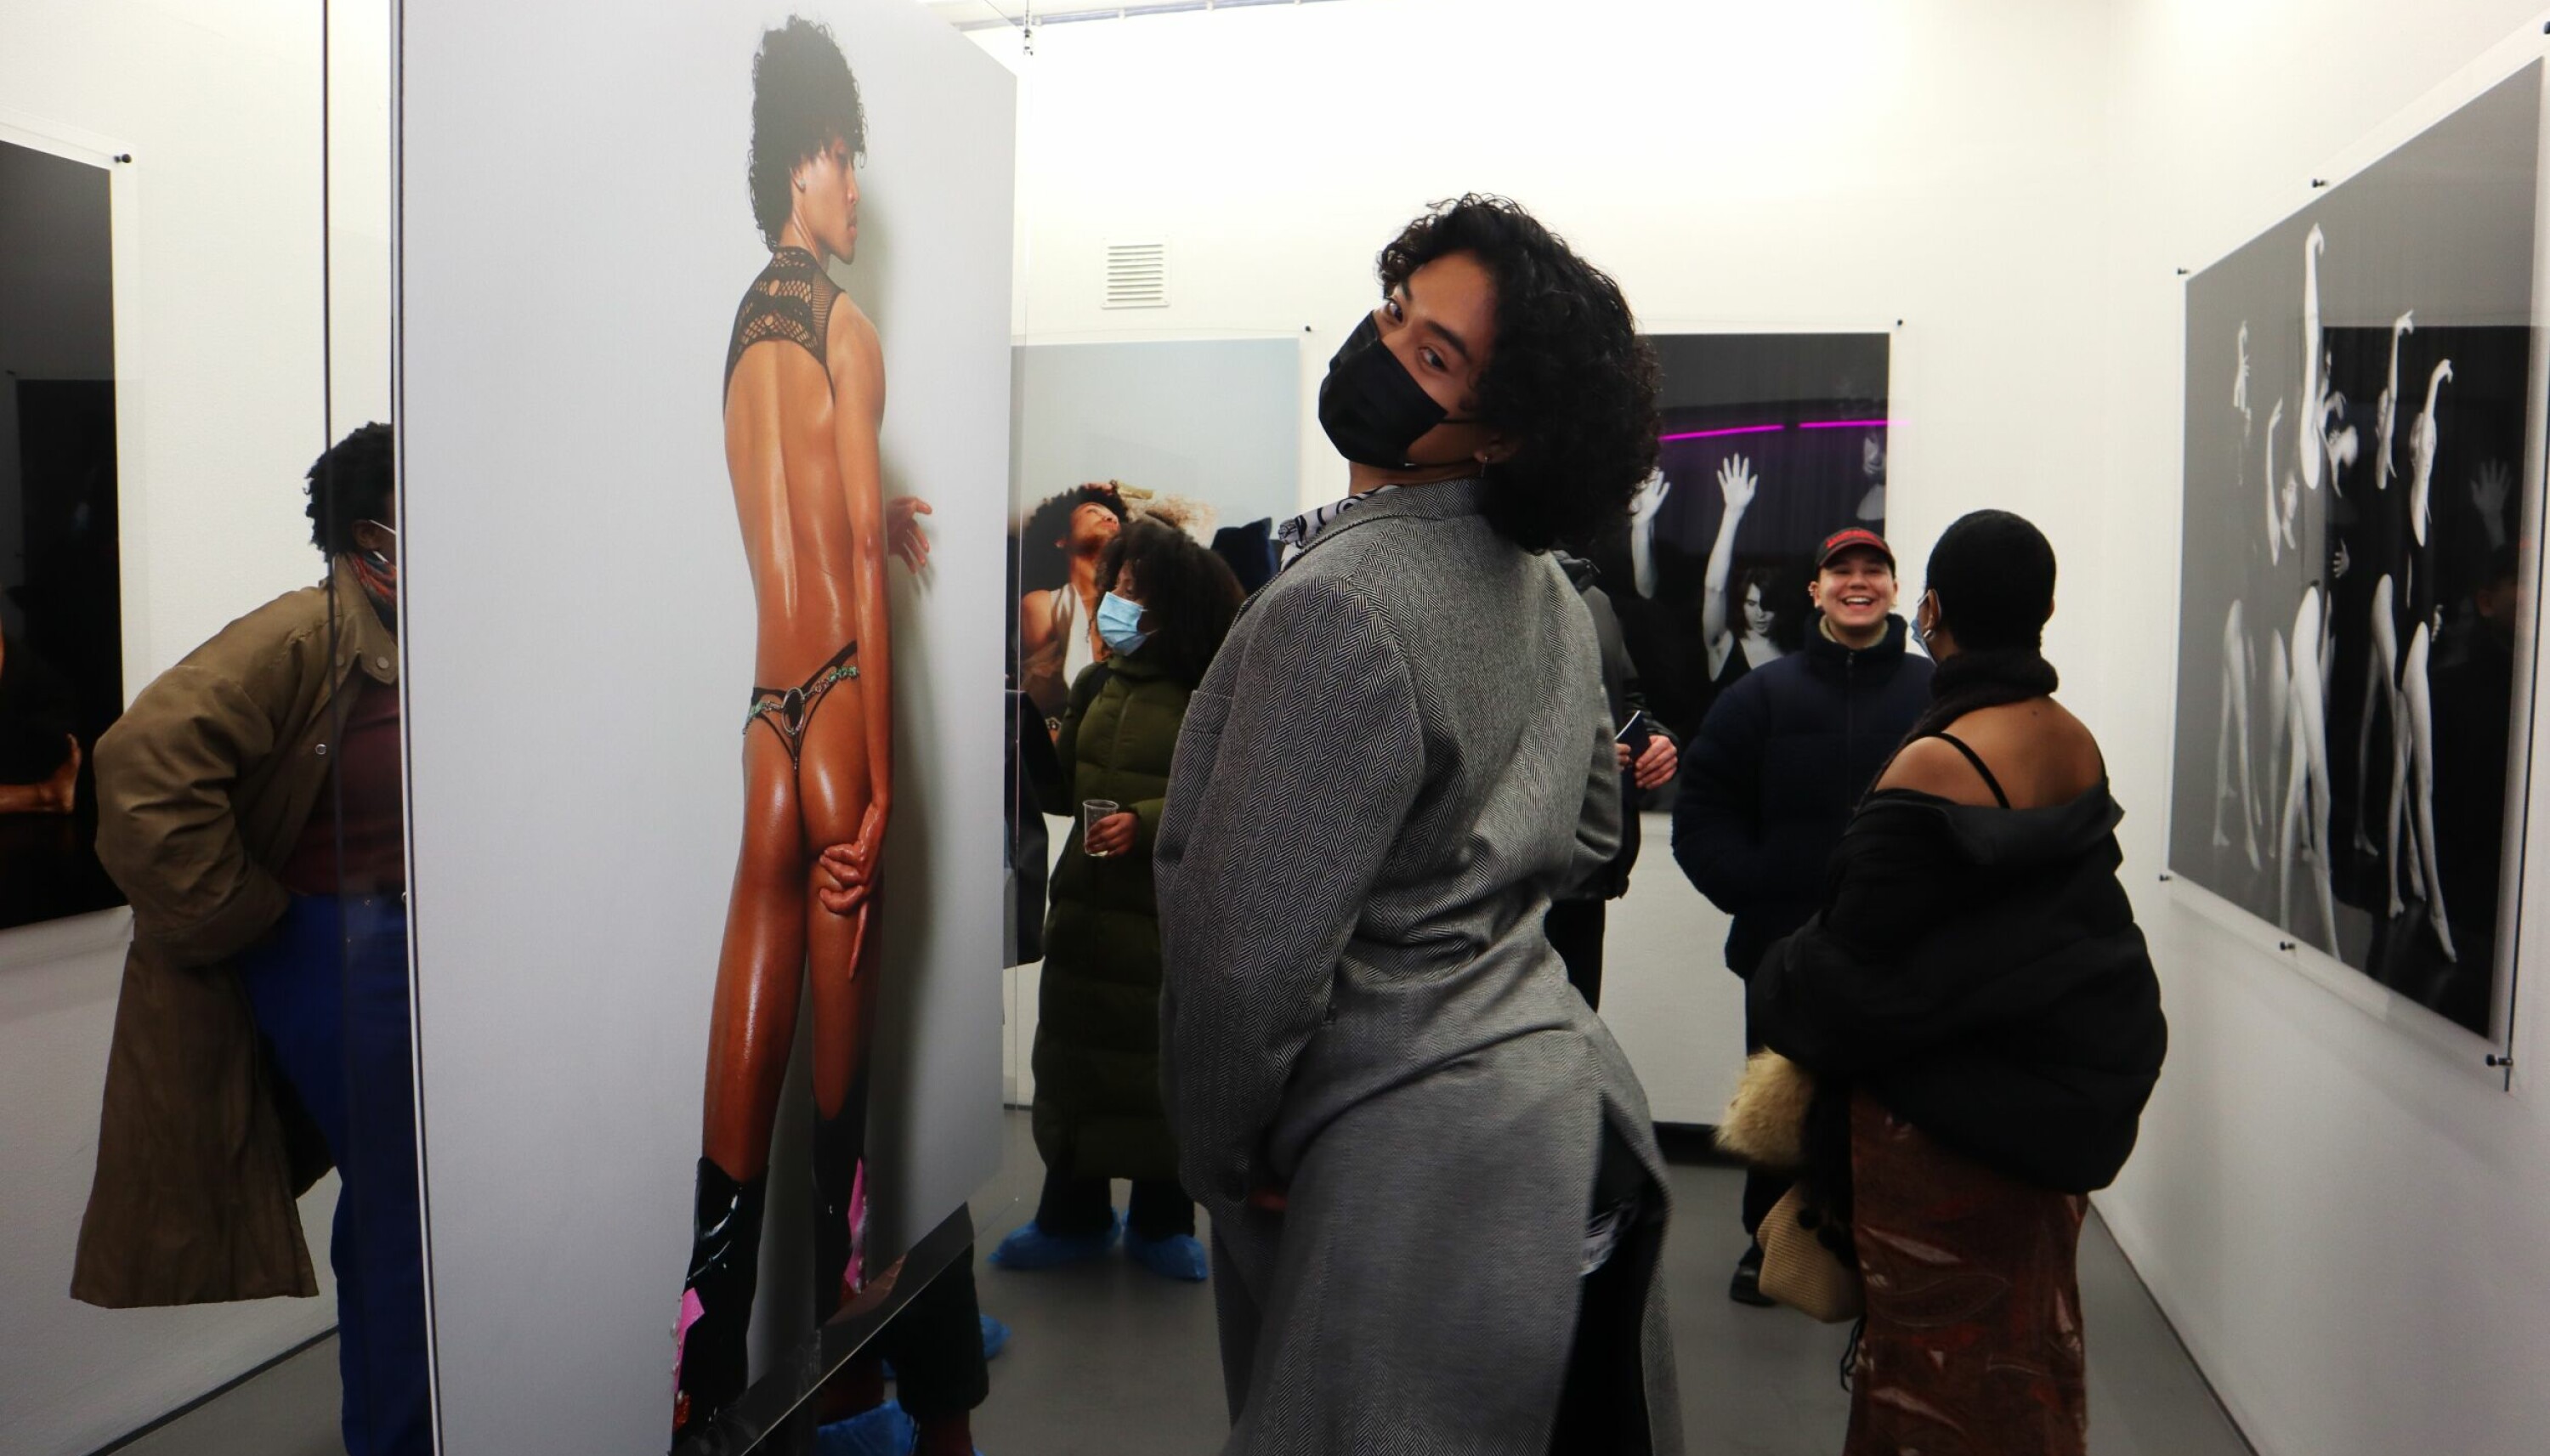 Modellen på Chai Saeidis foto, artisten Carlisle Sienes, etterligner sin egen posering under utstillingsåpningen.